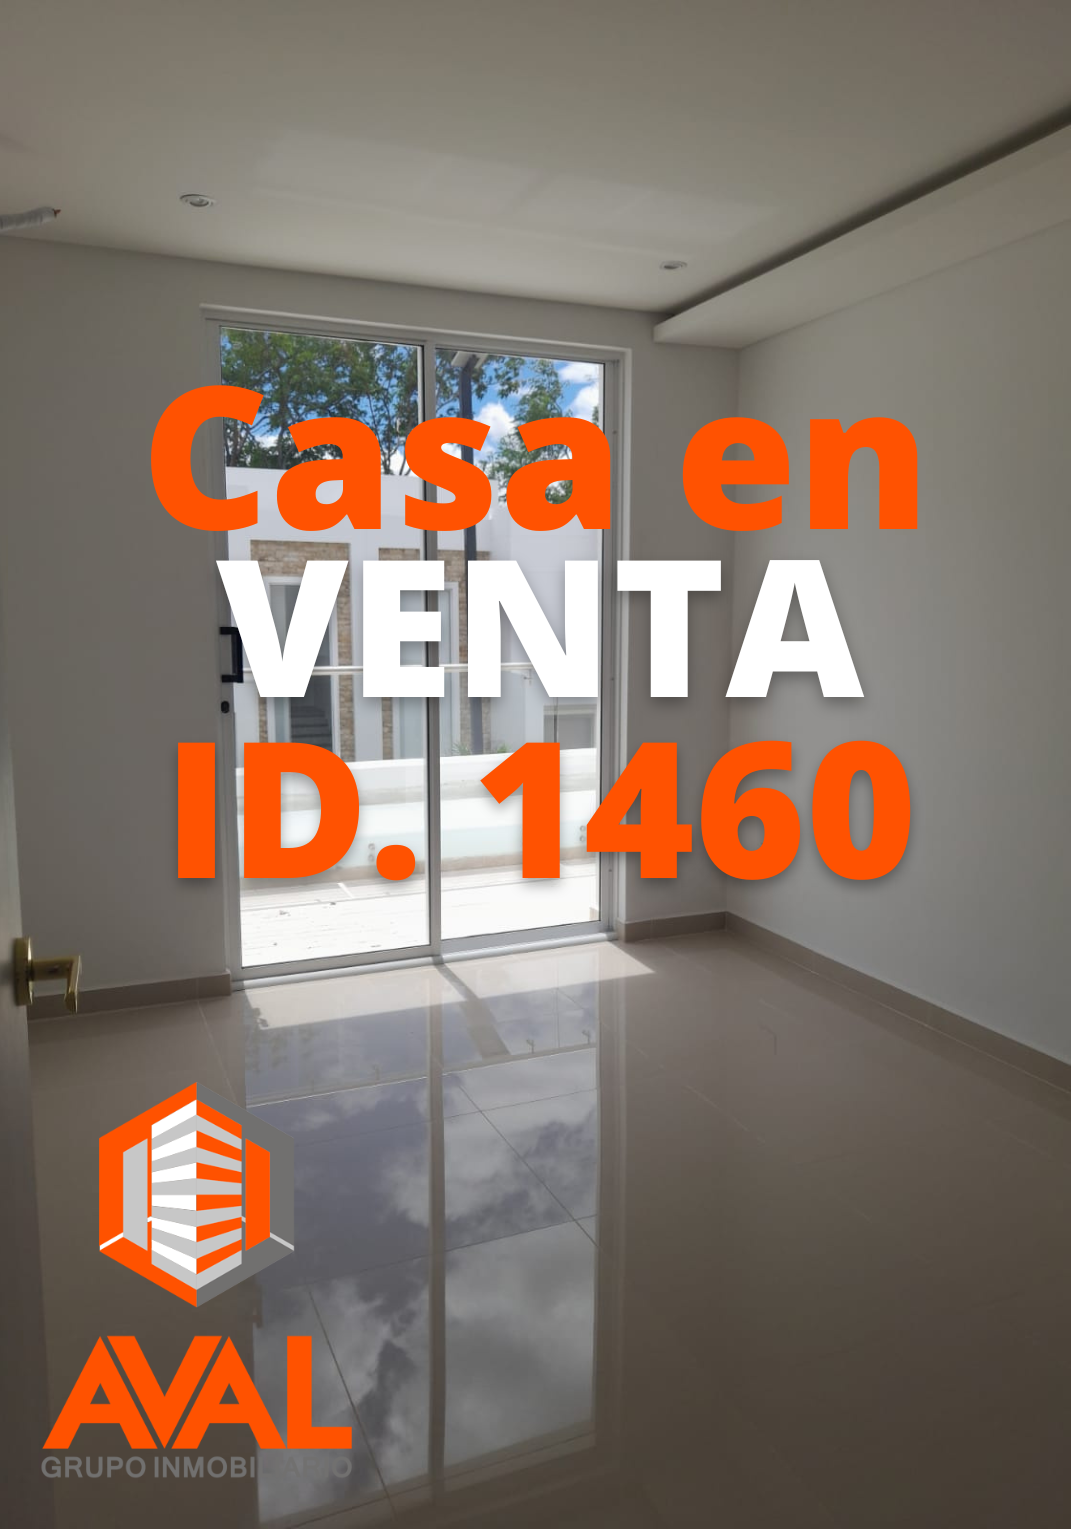 CASA EN VENTA, CONDOMINIO LUXO A ID 1460